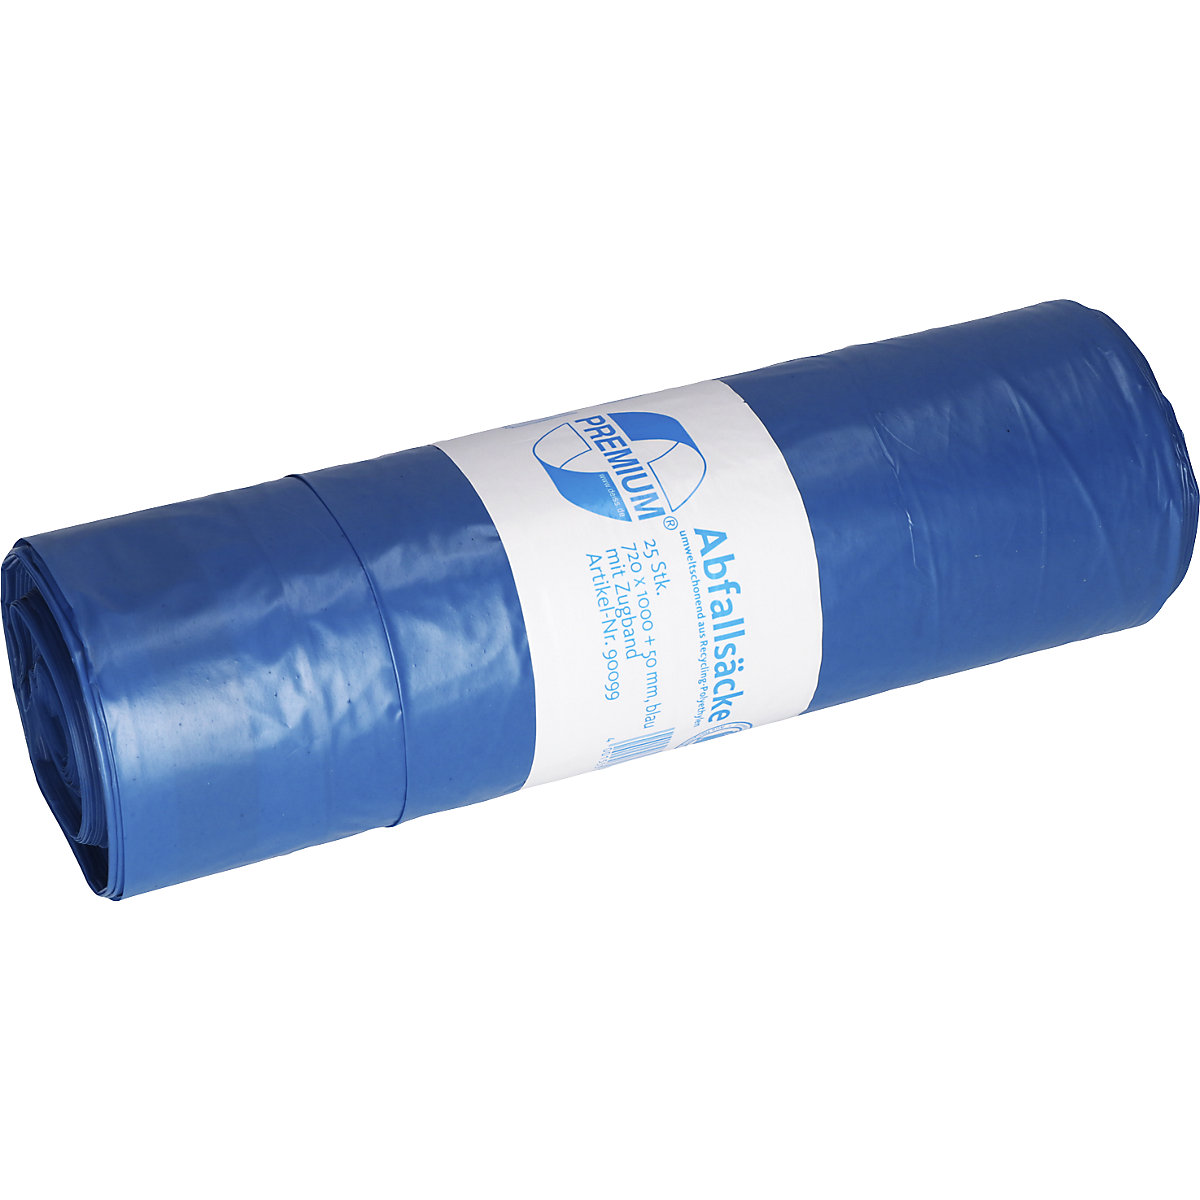 Sacs-poubelle à liens coulissants, en PE basse densité, 120 l, 50 µm, l x h 720 x 1000 mm, lot de 250, bleu